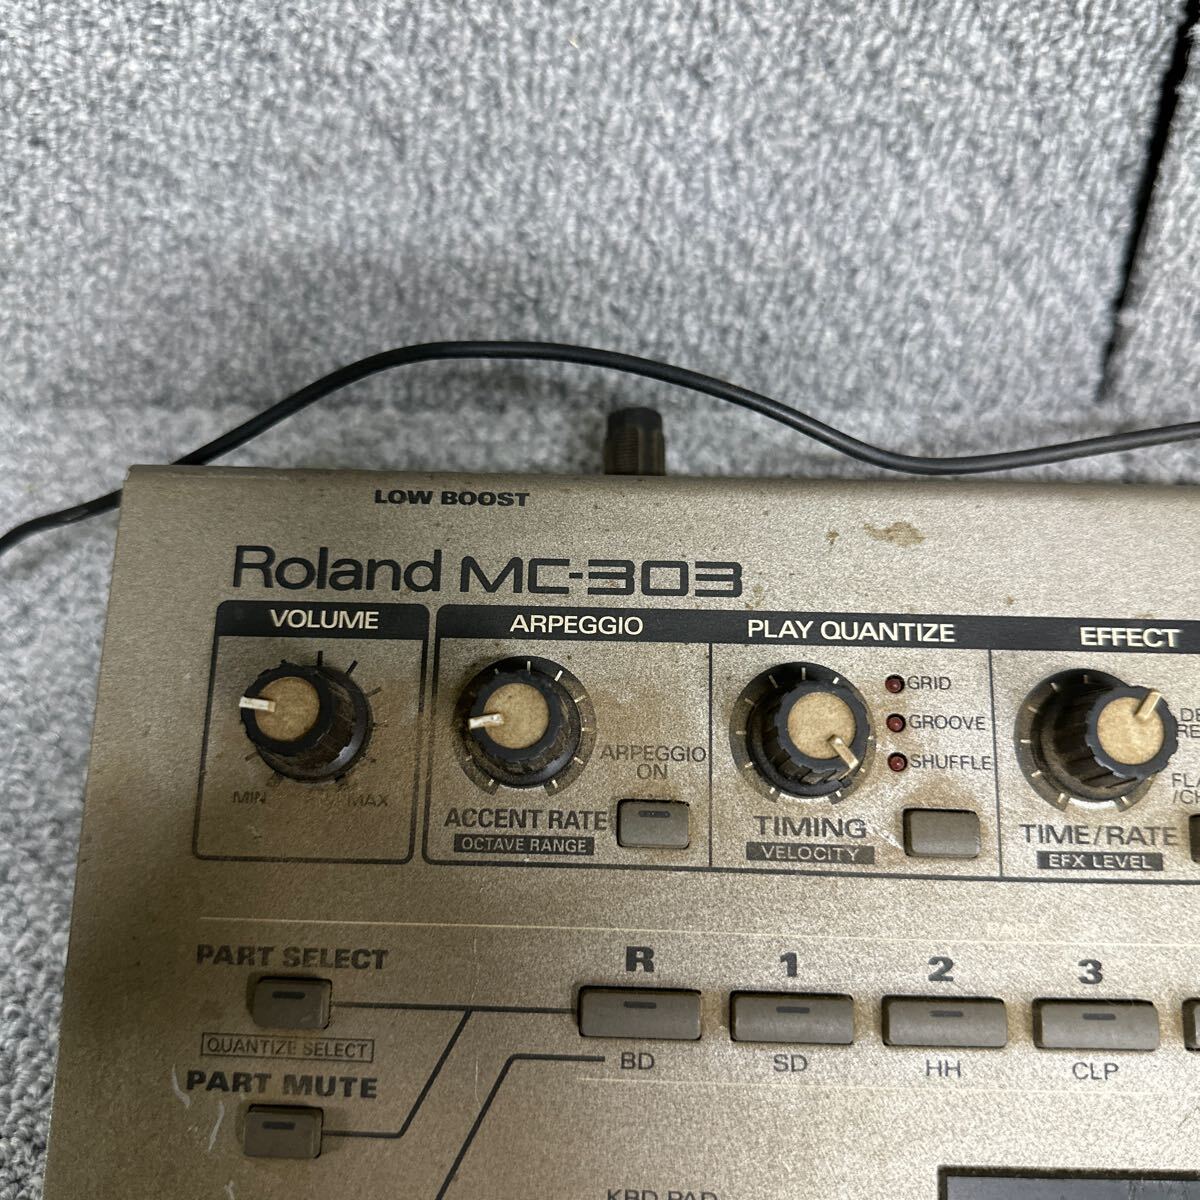 MYM5-1 супер-скидка Roland MC-303 секвенсор ритм-бокс groovebox электризация OK б/у текущее состояние товар *3 раз повторная выставка . ликвидация 